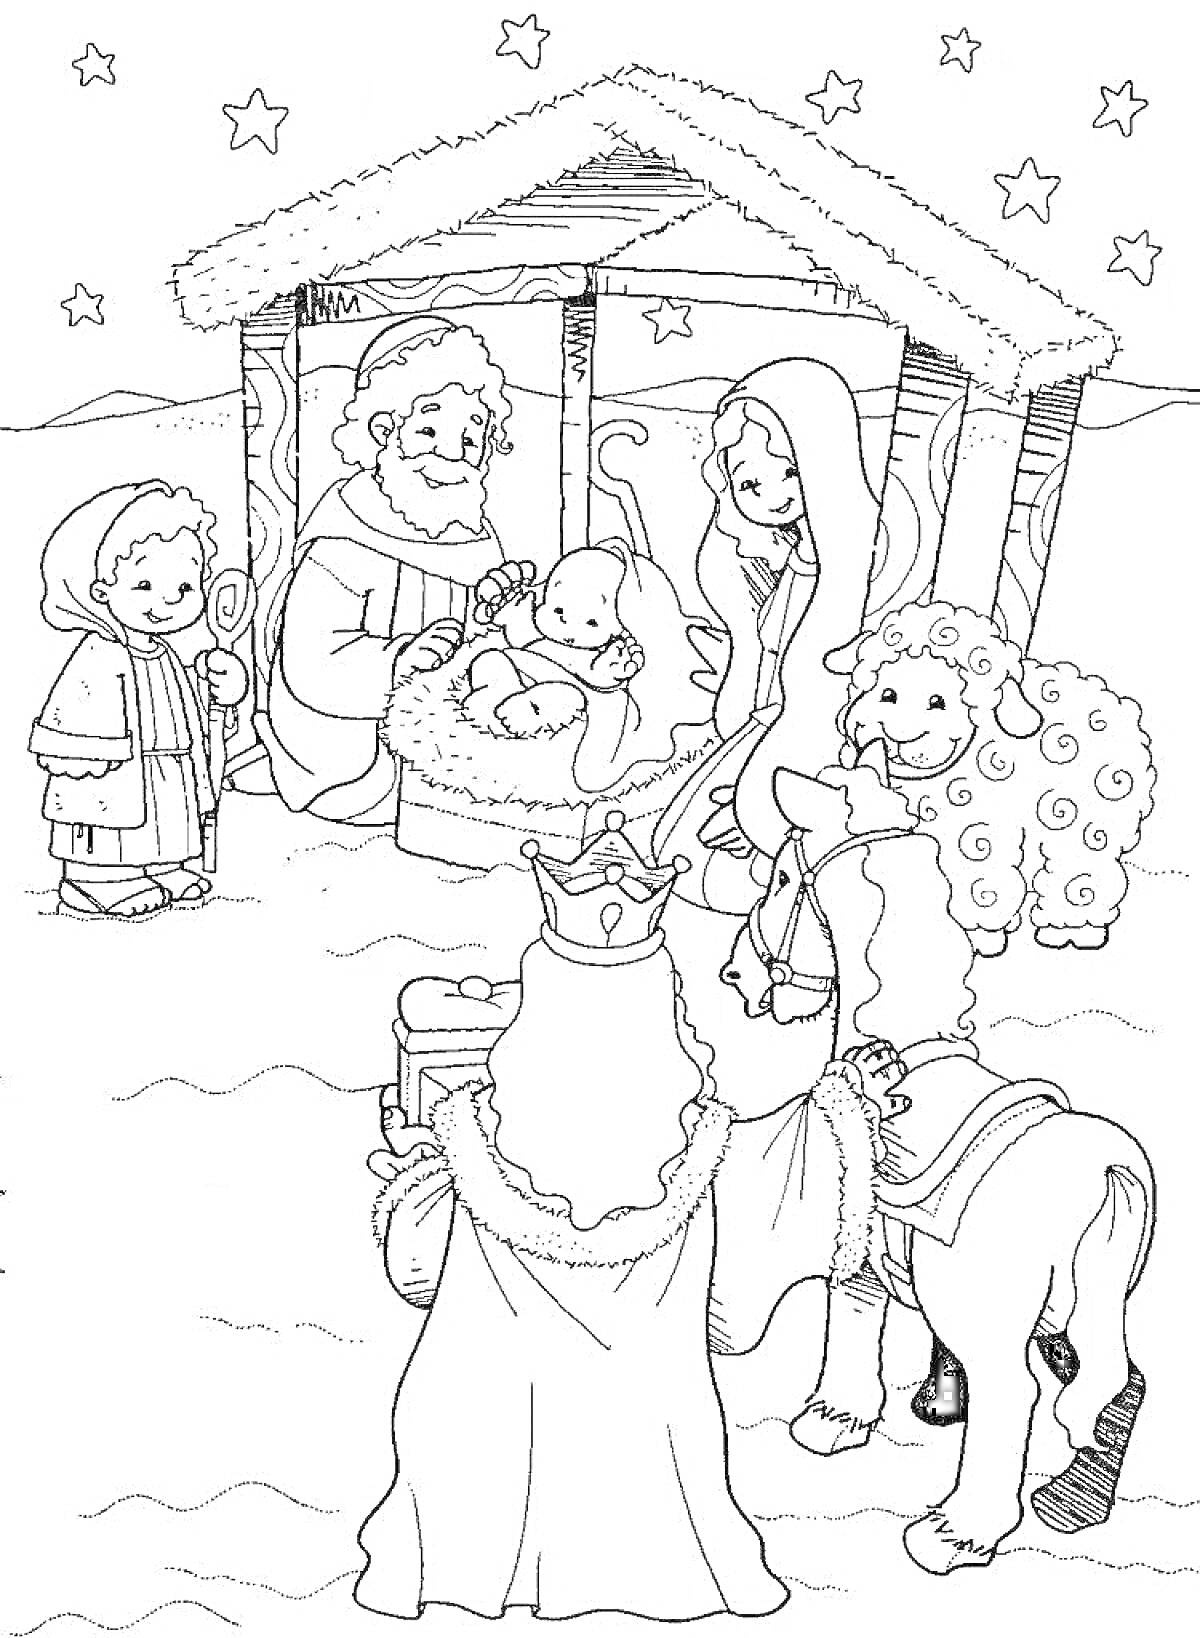 Раскраска Рождественский вертеп с малышом Иисусом, Марией, Иосифом, пастухом, волхвом и верблюдом